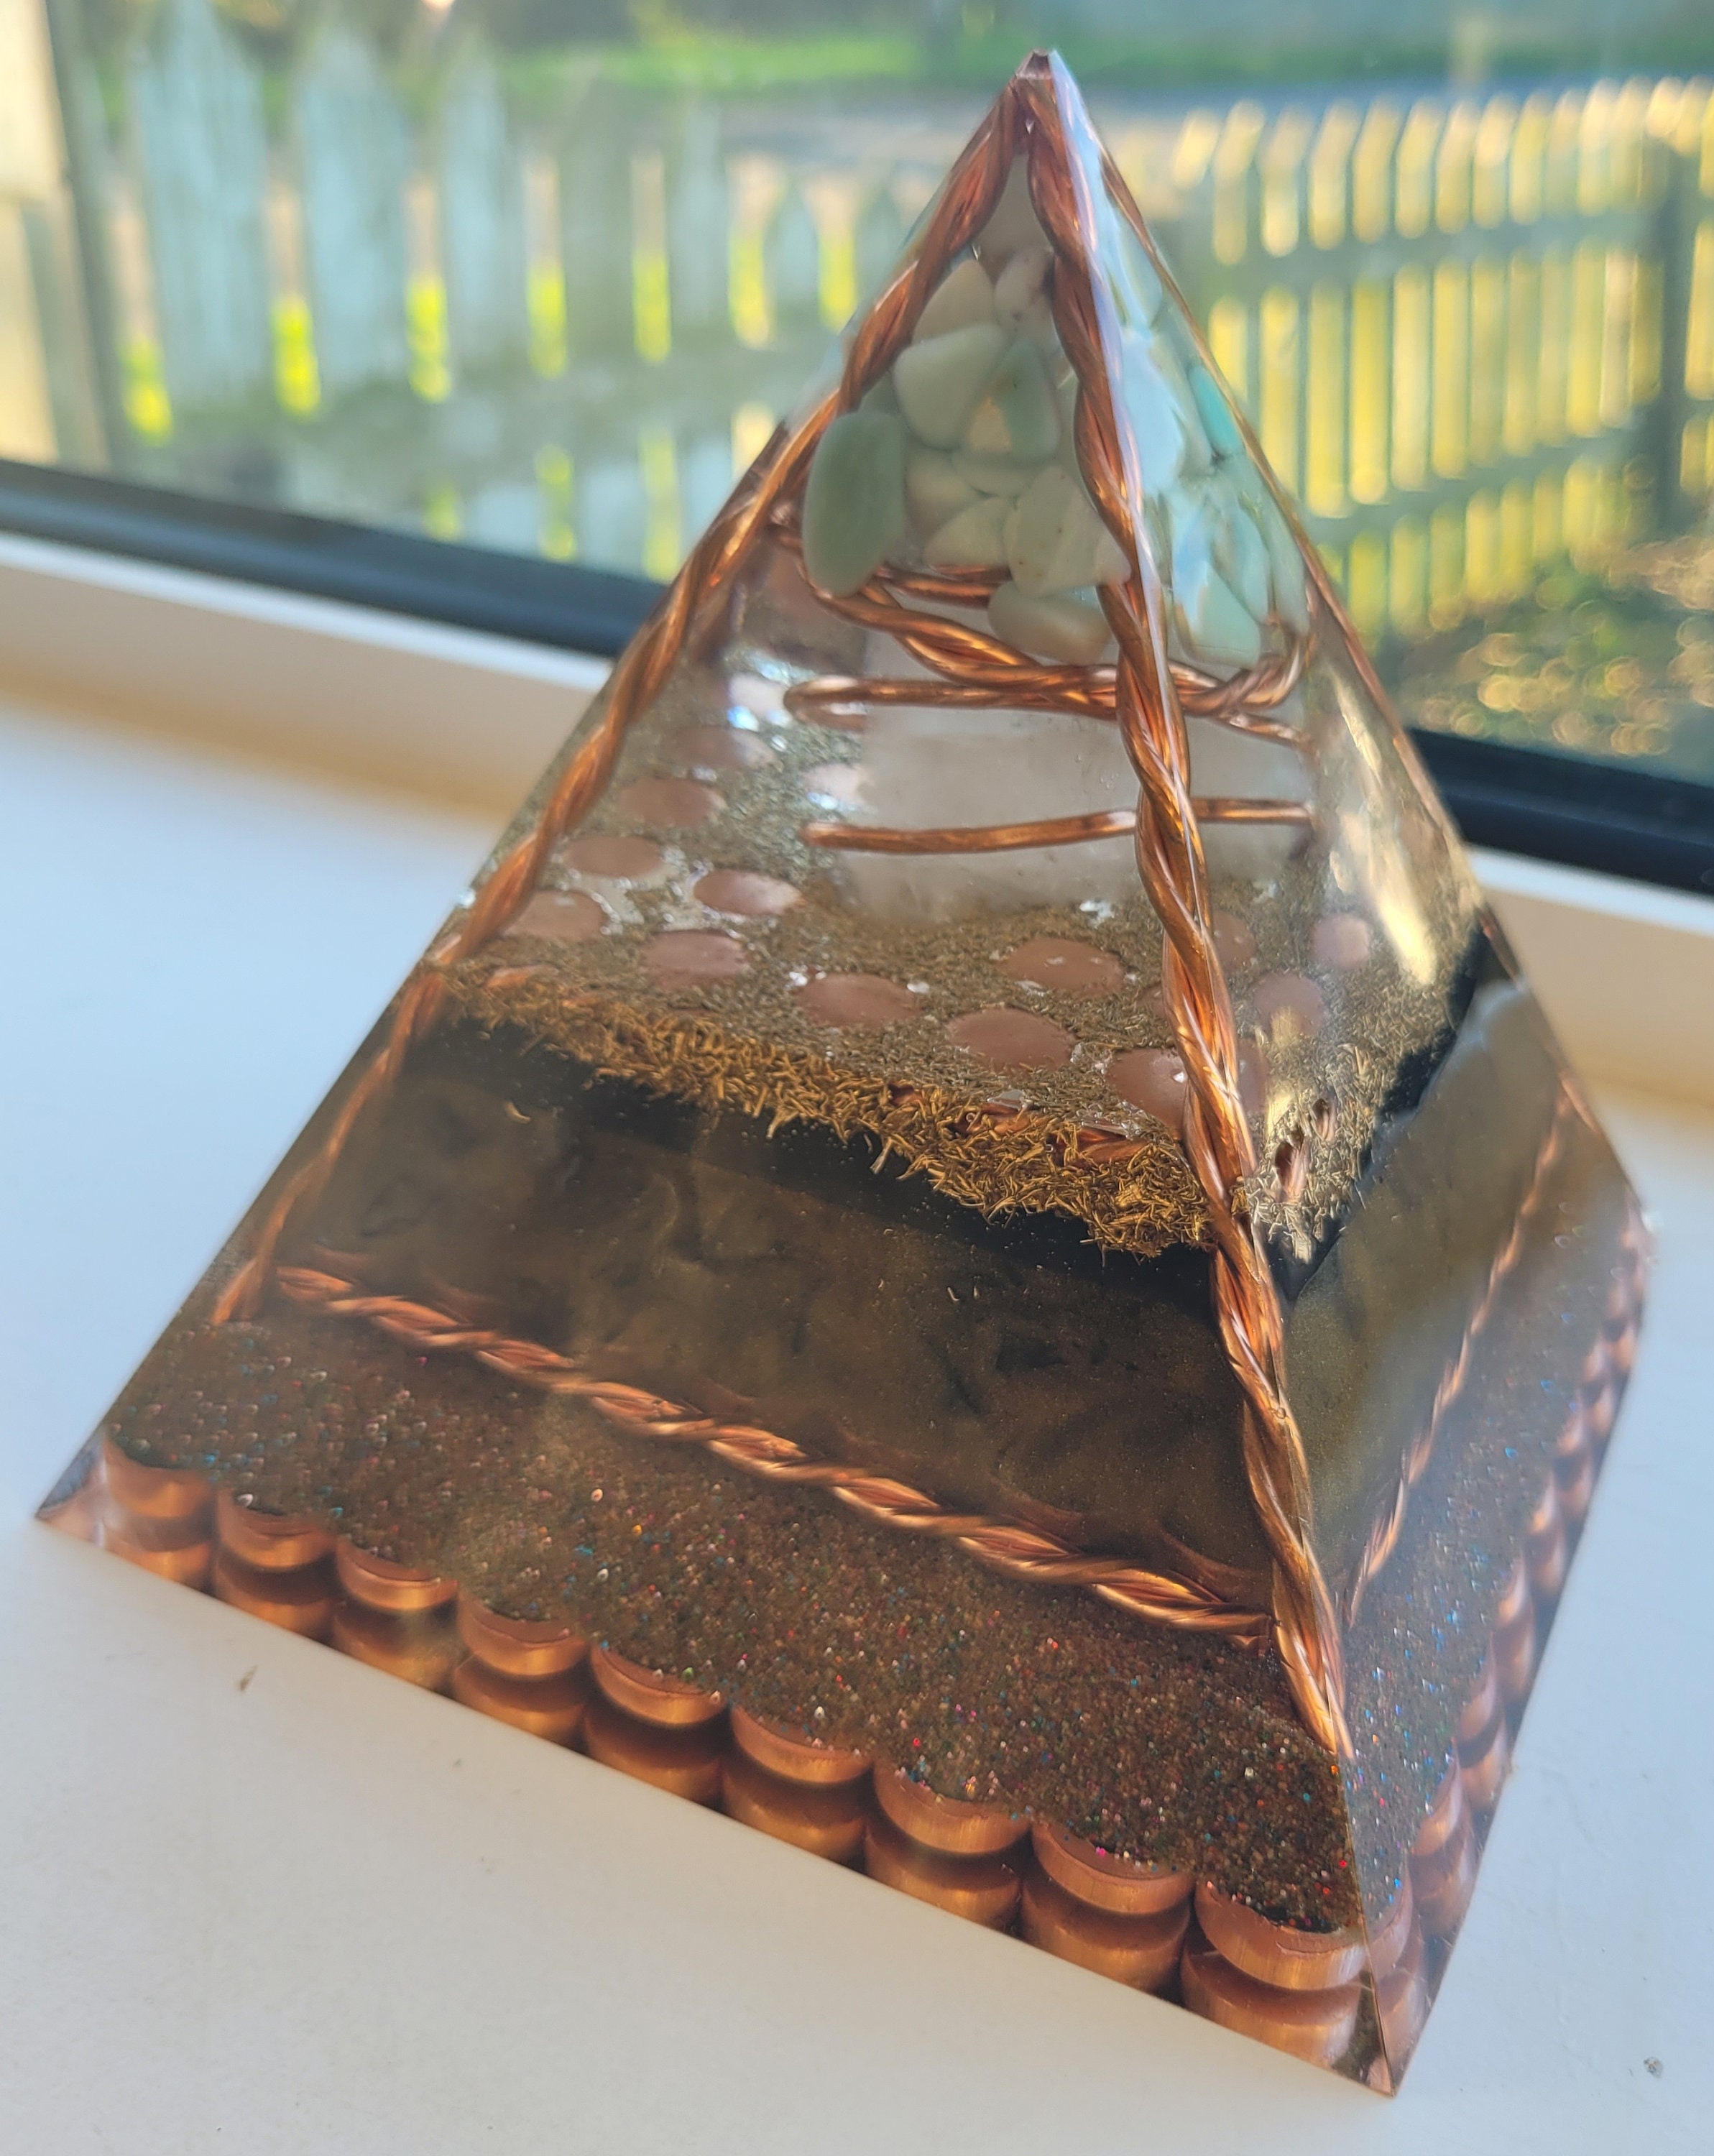 Solid Copper Pyramid, 6.7 pounds (Michigan #F0213)